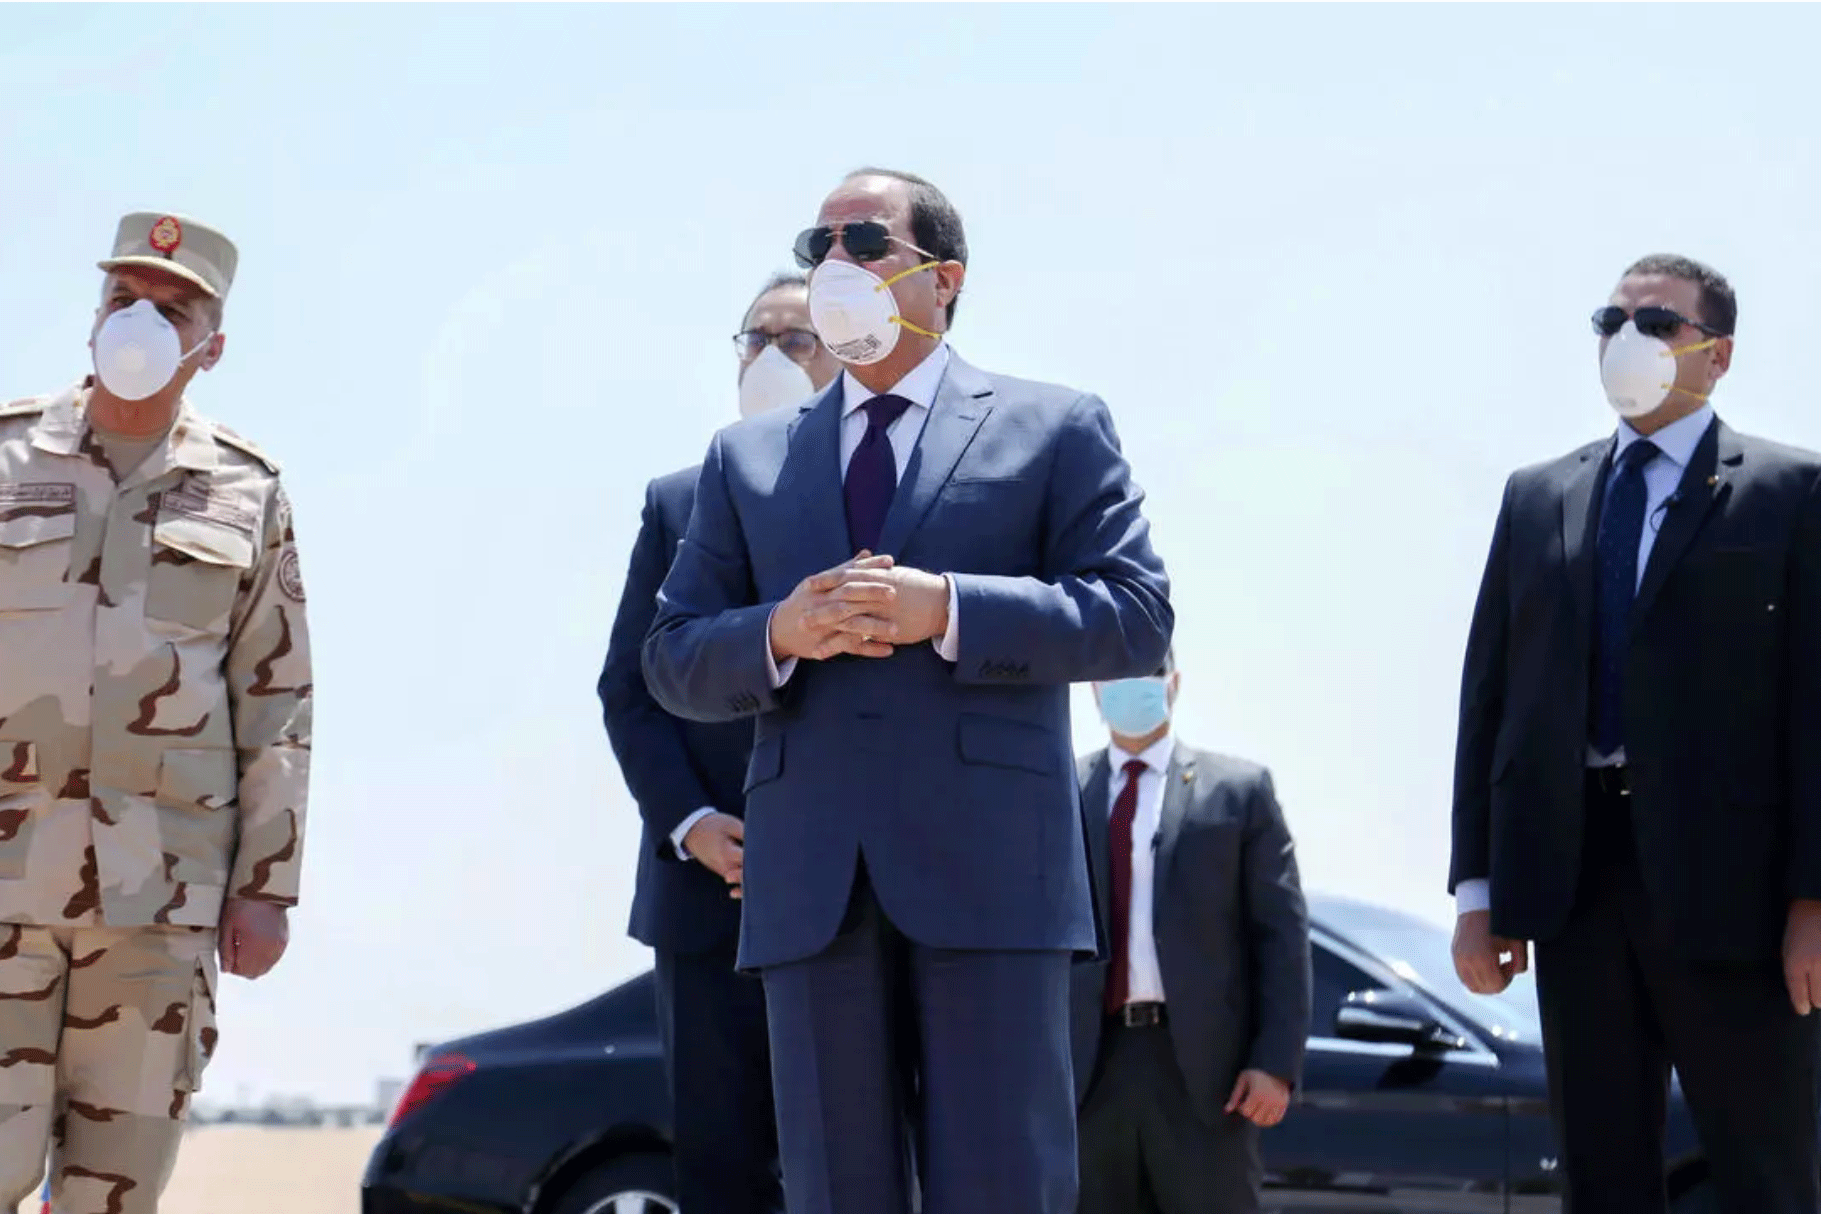 صورة وزعتها الرئاسة المصرية في السابع من أبريل يبدو فيها الرئيس عبد الفتاح السيسي خلال زيارة الى قاعدة عسكرية في شرق القاهرة